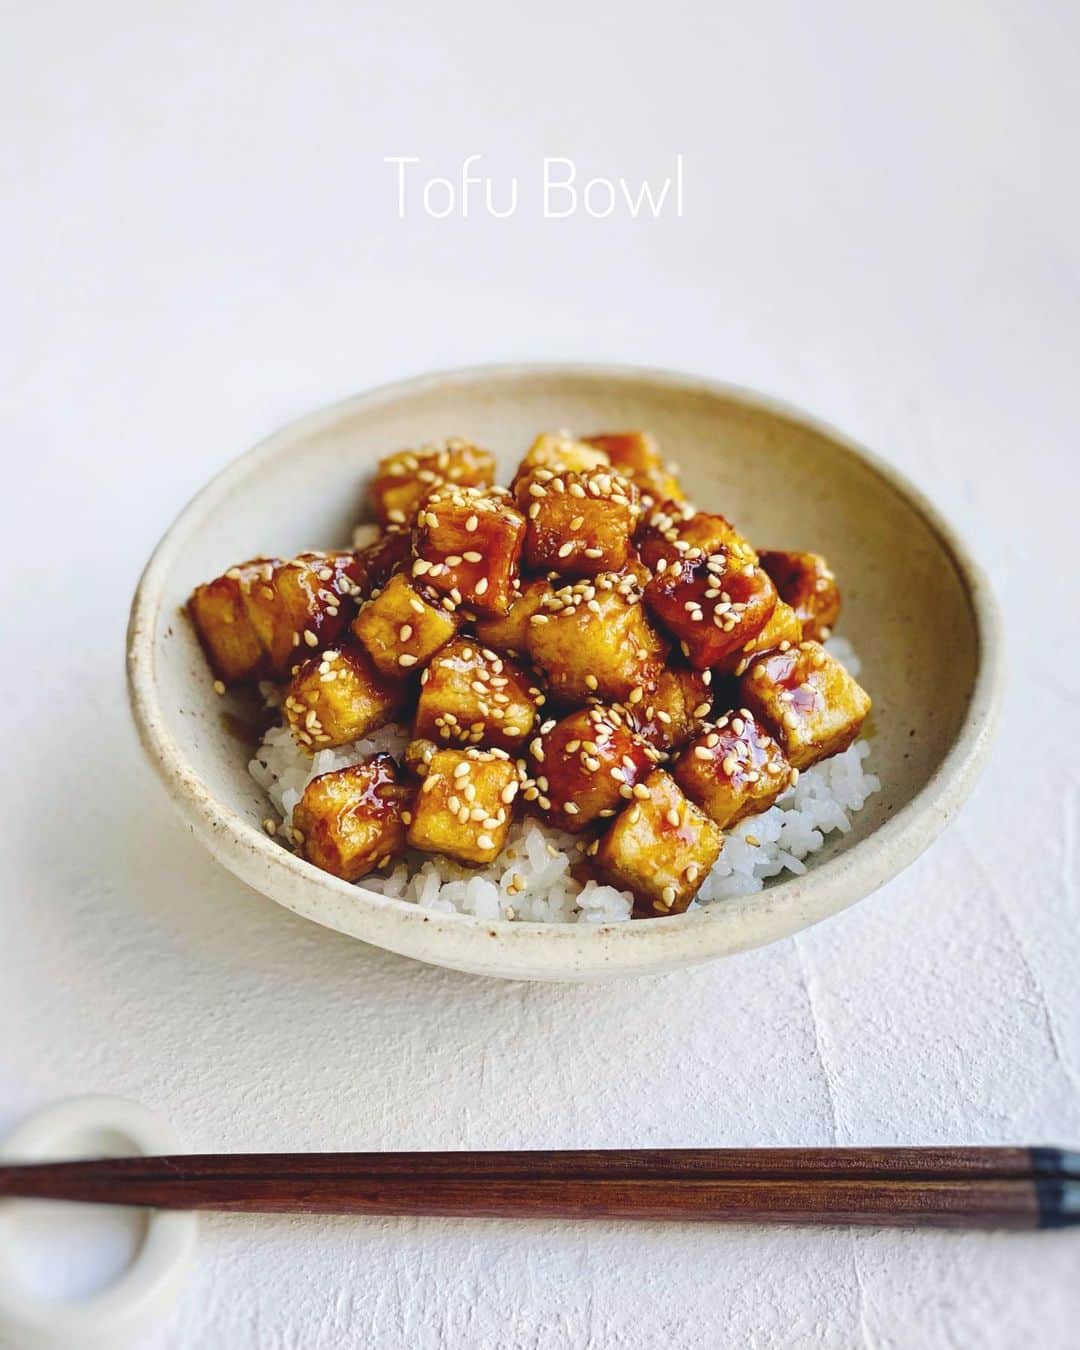 Chinamiさんのインスタグラム写真 - (ChinamiInstagram)「Teriyaki Tofu Bowl #tofu #豆腐 #先に言っておきますよ #下の話は例の夢の続きです💭 . 「豆腐DELI」 . こんなこともあろうかと、準備していてよかった。原田さんちのじいちゃんが、空いている長屋の一角を低額で貸してやっから豆腐DELIやってみっかと仰って、とんとん拍子だった。企画を大切に温めておいてよかった。なんてったって10年越しの夢だったからね。 . お店は清く柔らかくたくましく、それこそ佇まいからして豆腐を想起。お店に一歩足を踏み入れた途端に心も体も健康になるんだ。お豆腐をメインに使った日替わり料理が5種、お豆腐をアクセントに使った常備菜メニューが5種、豆腐サラダ3種、豆腐スイーツ2種、これらがお行儀良くガラスショーケースに陳列していてお客様をわくわく釘付けにさせる。ちなみにショーケースは、原田さんちのおばあちゃんが昔小さな和菓子屋さんを営んでおられた時に使っていたものを貸してくださることになった。ガラスの角に3センチほどのナラ材がぐるりと施されていて、味のある優しい風合い。 . コンセプトは、"心の声をさらりと口に出してもらえるお店"。お気兼ね無く、カッコつけない、ほわんとした優しい雰囲気。それが前々から抱いていた私の理想的なDELI。おからのミニコロッケ、1個から気軽に買えるっていいなと思う。 . #夢の続き #お時間許される方はぜひ . 豆腐DELIが少しずつ地域に根付いてきたことが嬉しいな。サステナブルな観点からも大豆ミートは世界中注目の的だし、豆腐の消費量も年々右肩上がり。テクノロジーの面では遅れを否めない昨今の日本だけれど、健康食品の面では世界に胸を張っておすすめできる食品がたくさんあるものね。 . 1782年(天明2年)に出版された『豆腐百珍（とうふひゃくちん）』という豆腐料理のレシピ本にあやかって100種類以上の豆腐メニューを提供するつもり。ぜひ昔ながらの和の良いところと、未来に残したい豆腐料理を作ってお客様に楽しんでいただきたいな。これは私なりに温めていたSDGs目標の一部なんだ。(わわ！話が逸れた！) . #戻ります . 植物が土の中に根を張るように、素直にまじめに営んでいきたいなといつも思う。毎朝気持ちを新たに感謝を忘れず自然との境界線なく、それがまさしく大切な合言葉♪ . #話長いけど大丈夫？ #さぁ夢の続きは豆腐DELI開店後へと続きます💭 . . 開店時間と同時にお客様の笑顔を見れる喜びはひとしお。大小とりどり使い勝手の良さそうな"おうちタッパー"を片手に、小走りでご来店。お客様を見ているととっても楽しそうでこちらまで元気をもらえる。ゆっくり選んでくださいませ！自然と声が出る。 . 日を増すごとにお客様の声が広がっていき、嬉しくてこちらも興に乗らせていただく。毎日ドキドキ計量しながら聞こえてくる声をメモりたい衝動に駆られた。 お客様の声はこんな感じ→「ん〜そうね、今日は回復力を高めたいから色彩の濃淡が目を引くおかずにしようかしら」「ん~でも干したワサビ菜が気持ちのムラを取っ払ってくれそうだし右端の豆腐とわさび菜の常備菜200gにするわ」「そうそう明日のお弁当に入れたい豆腐サモサは明朝家で揚げるから生のままいただくわ6個ね」「ん〜圧搾米油で揚げた大豆ミートの黒甘酢和えも気になるわね、美味しそうだし晩ごはん用に300g買っちゃお。あっと忘れるところだったわ、子どものおやつに豆腐スコーン3個も入れておいてね〜」と、こんな具合。心の声を聞けてとっても嬉しいな。 . というわけで、四季折々の自家製野菜と豆腐の美味しいお店「豆腐DELI」これからも妄想の中でお付き合い願います！😂笑 . #写真は豆腐コロコロステーキ丼 #豆腐DELI」2月13日 11時39分 - chinamiphoto